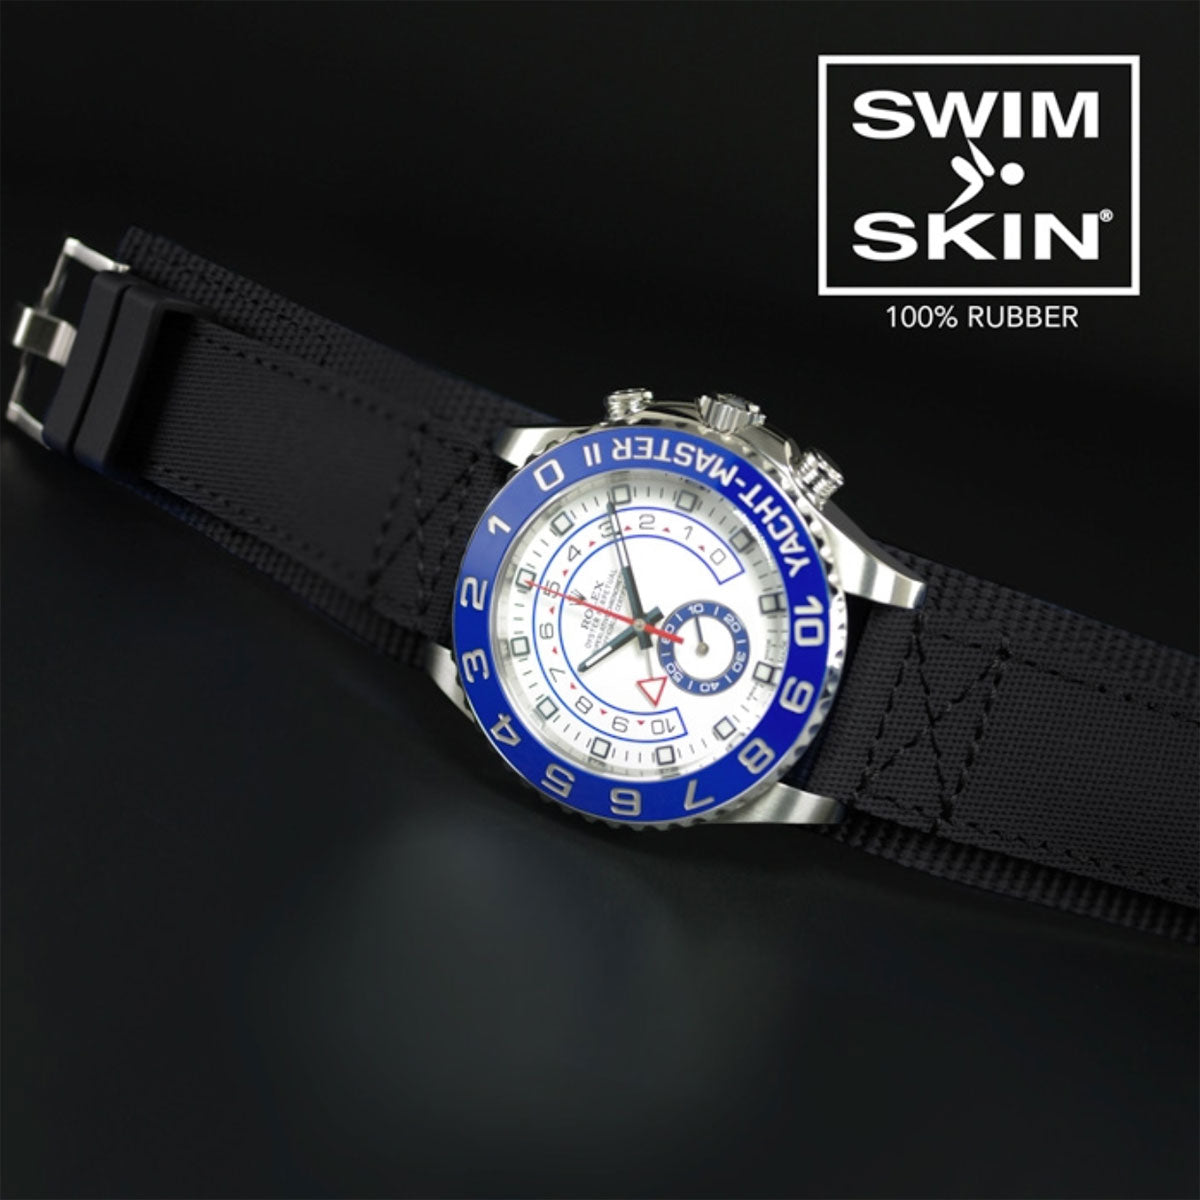 Rolex - Rubber B - Bracelet caoutchouc pour Yachtmaster II 44mm - Série Bund - watch band leather strap - ABP Concept -